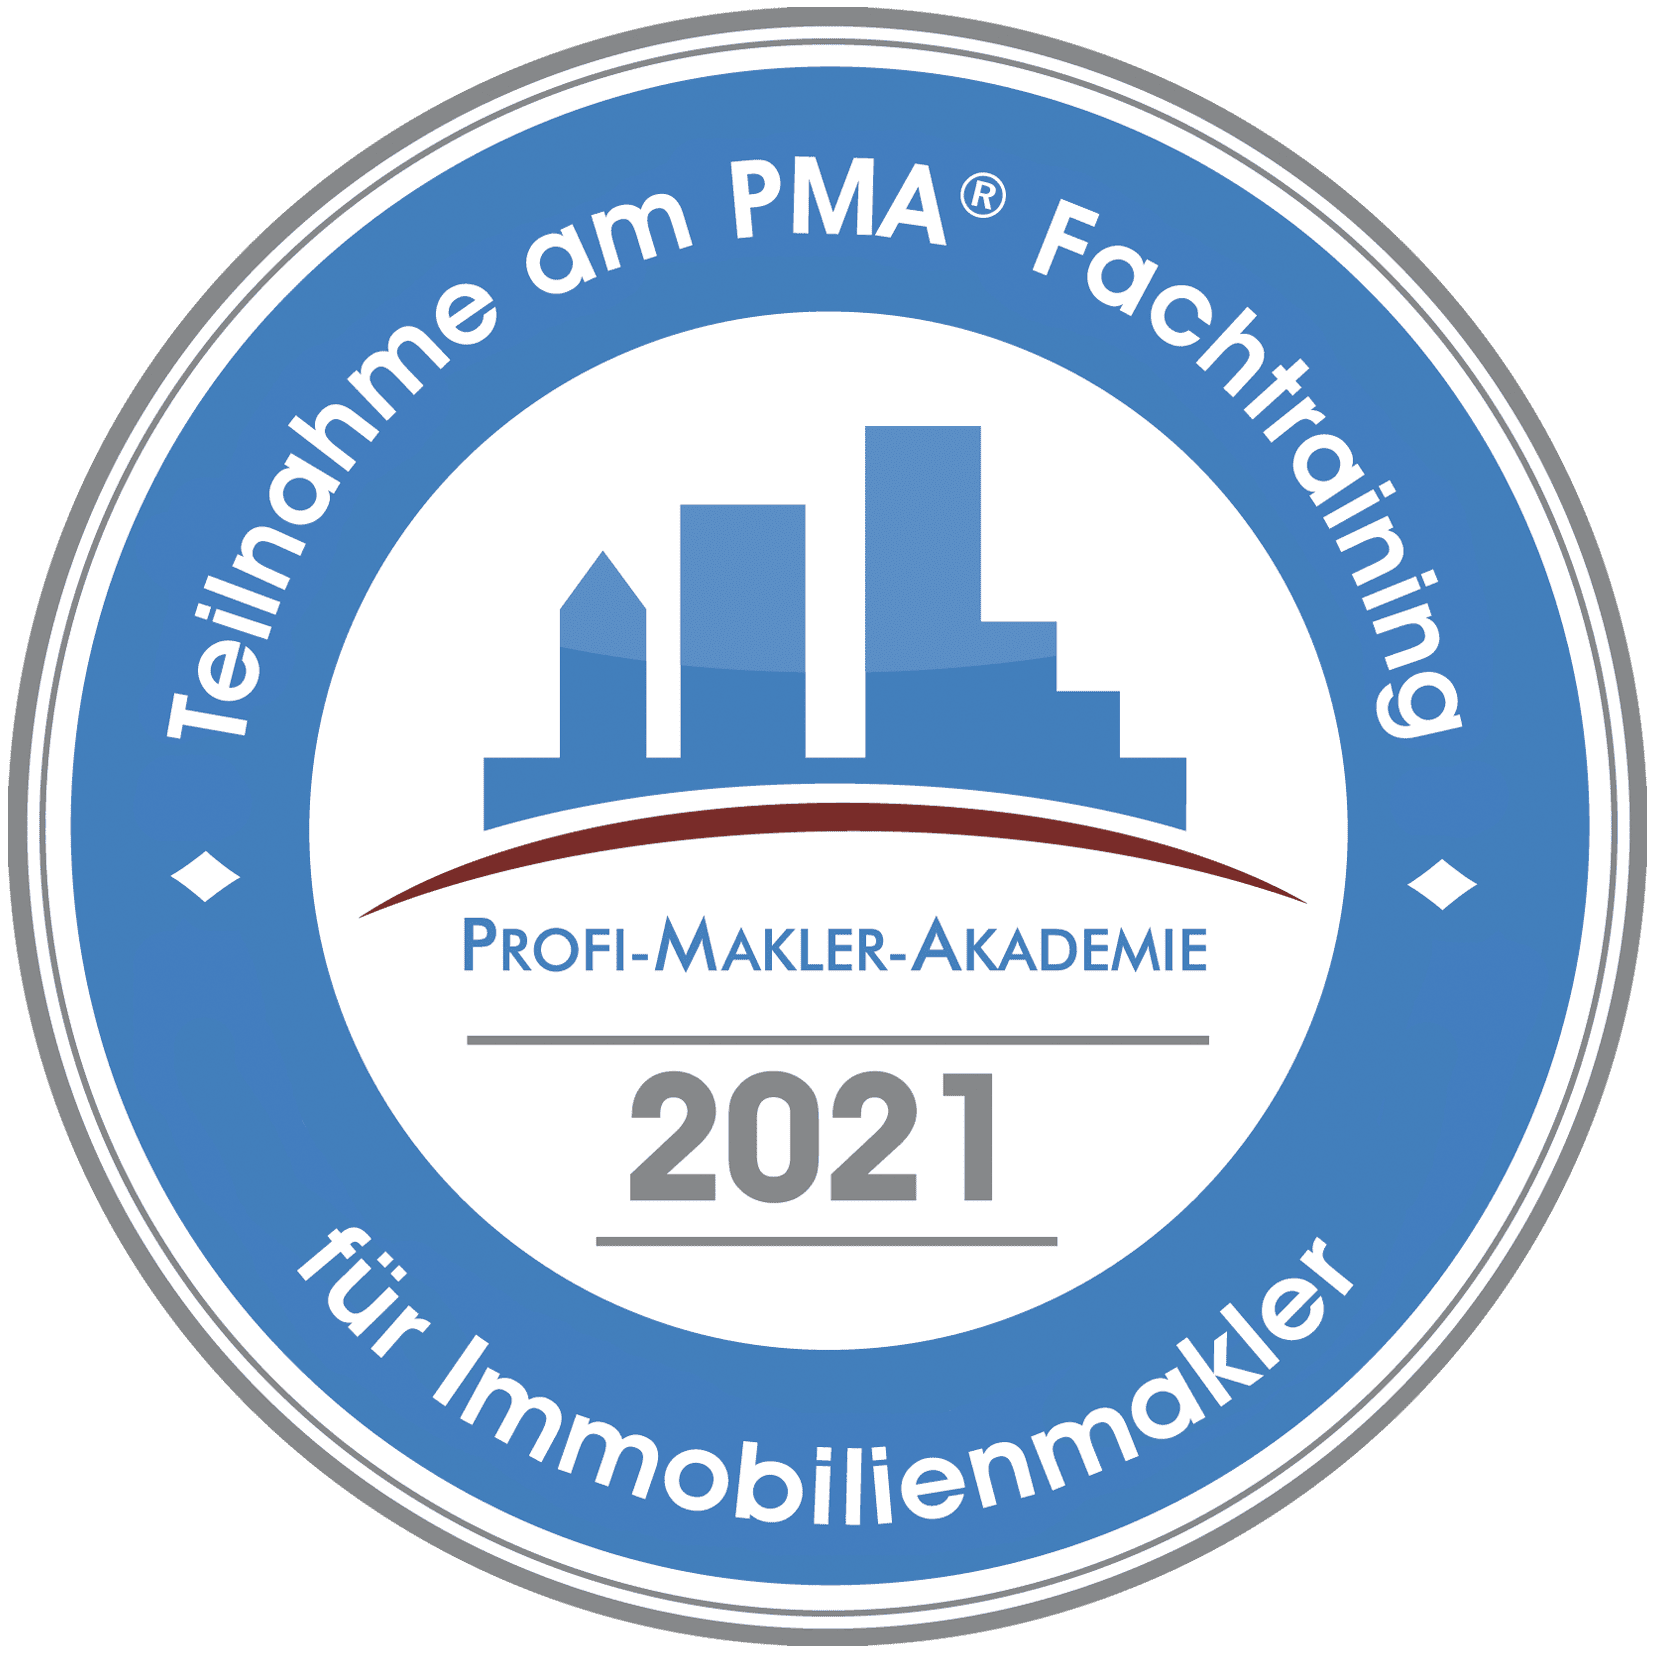 Emblem 2022 - PMA® Fachtraining für Immobilienmakler